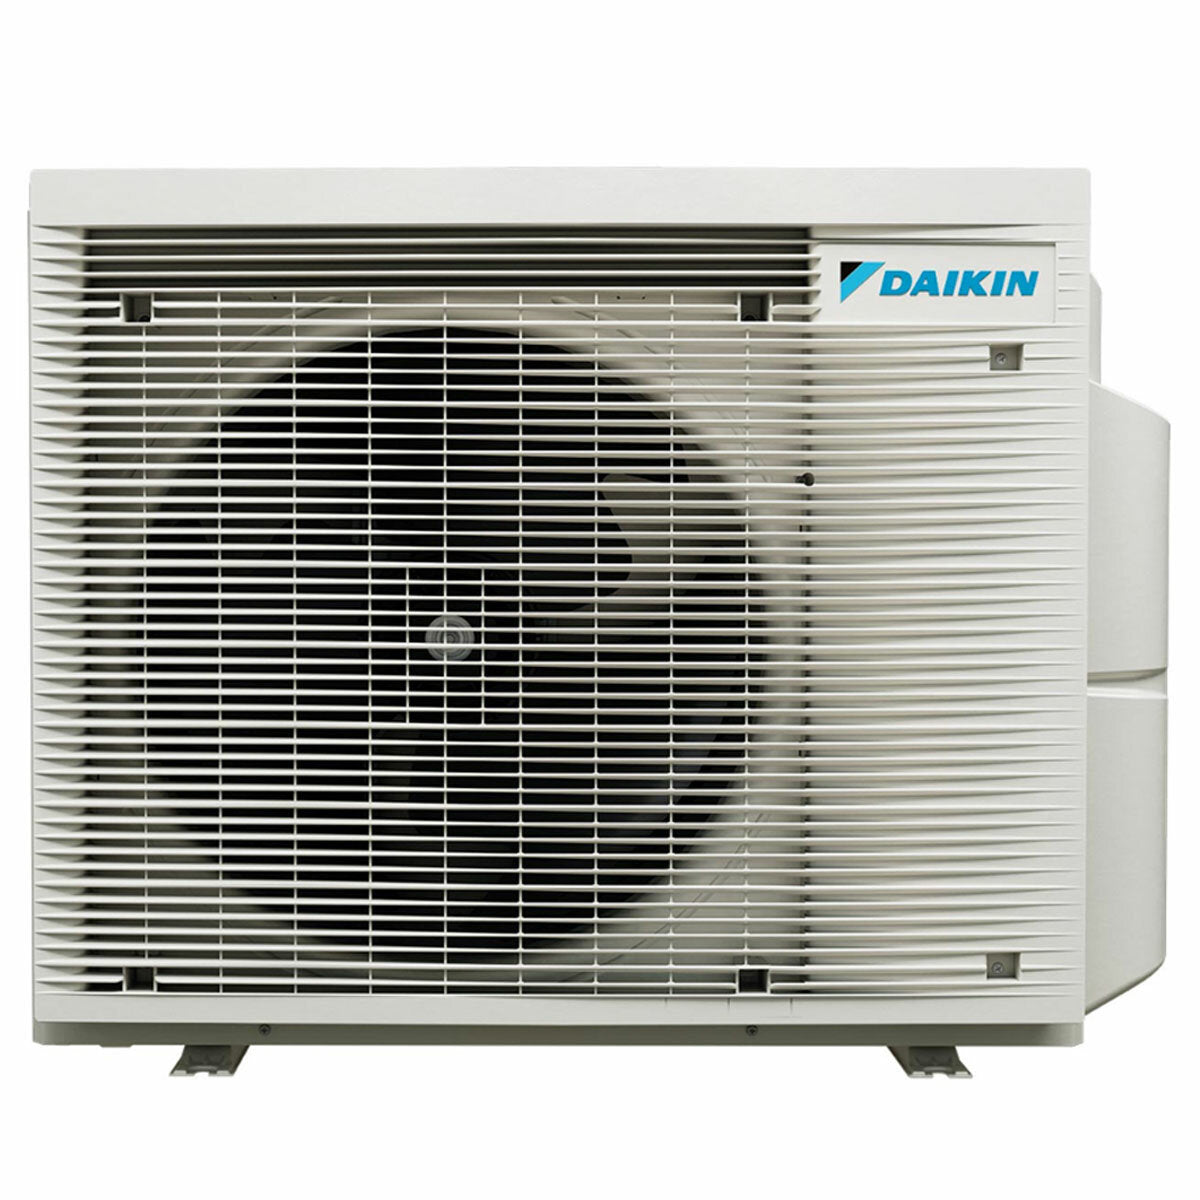 Daikin Stylish White Trial Split-Klimaanlage 7000+7000+12000 BTU Inverter A+++ WLAN-Außeneinheit 5 kW